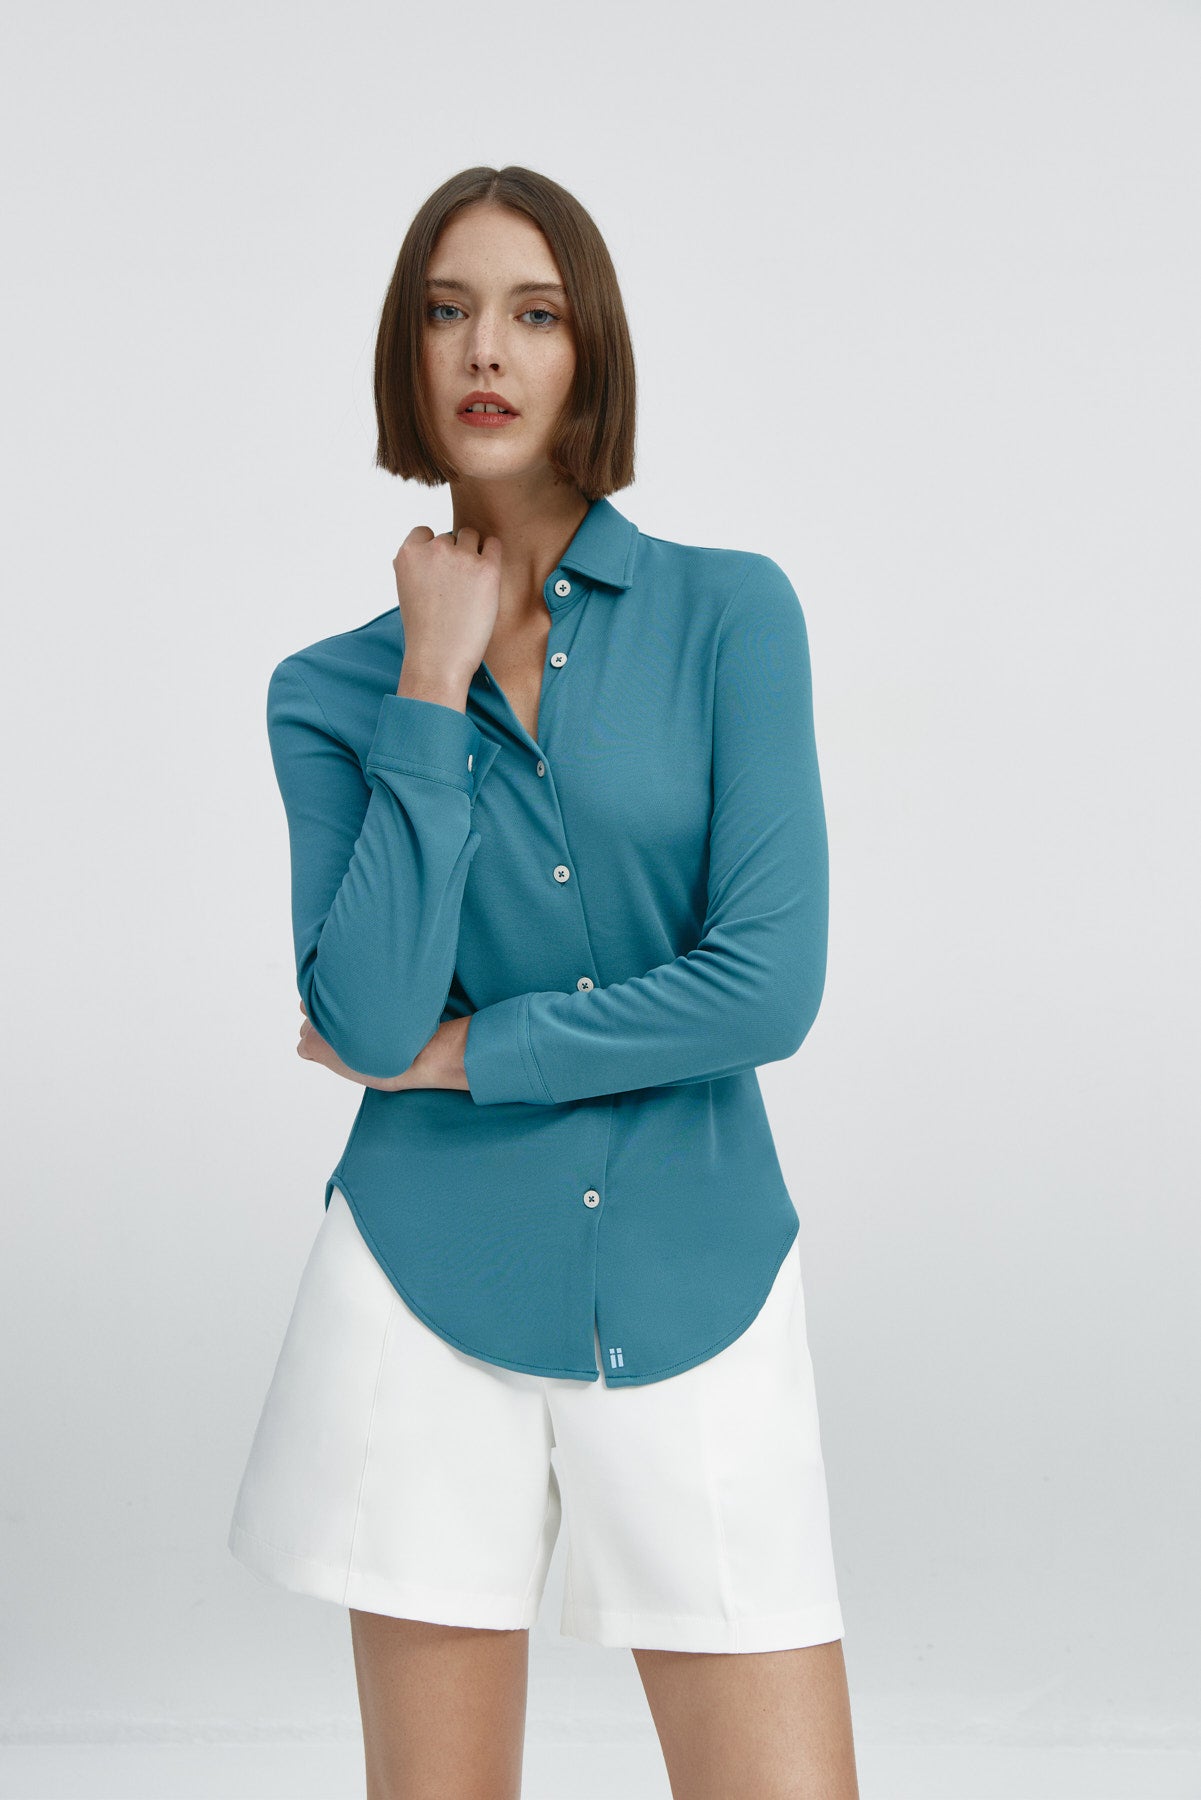 Camisa para mujer slim color azul neptuno, básica y versátil. Foto flexibilidad